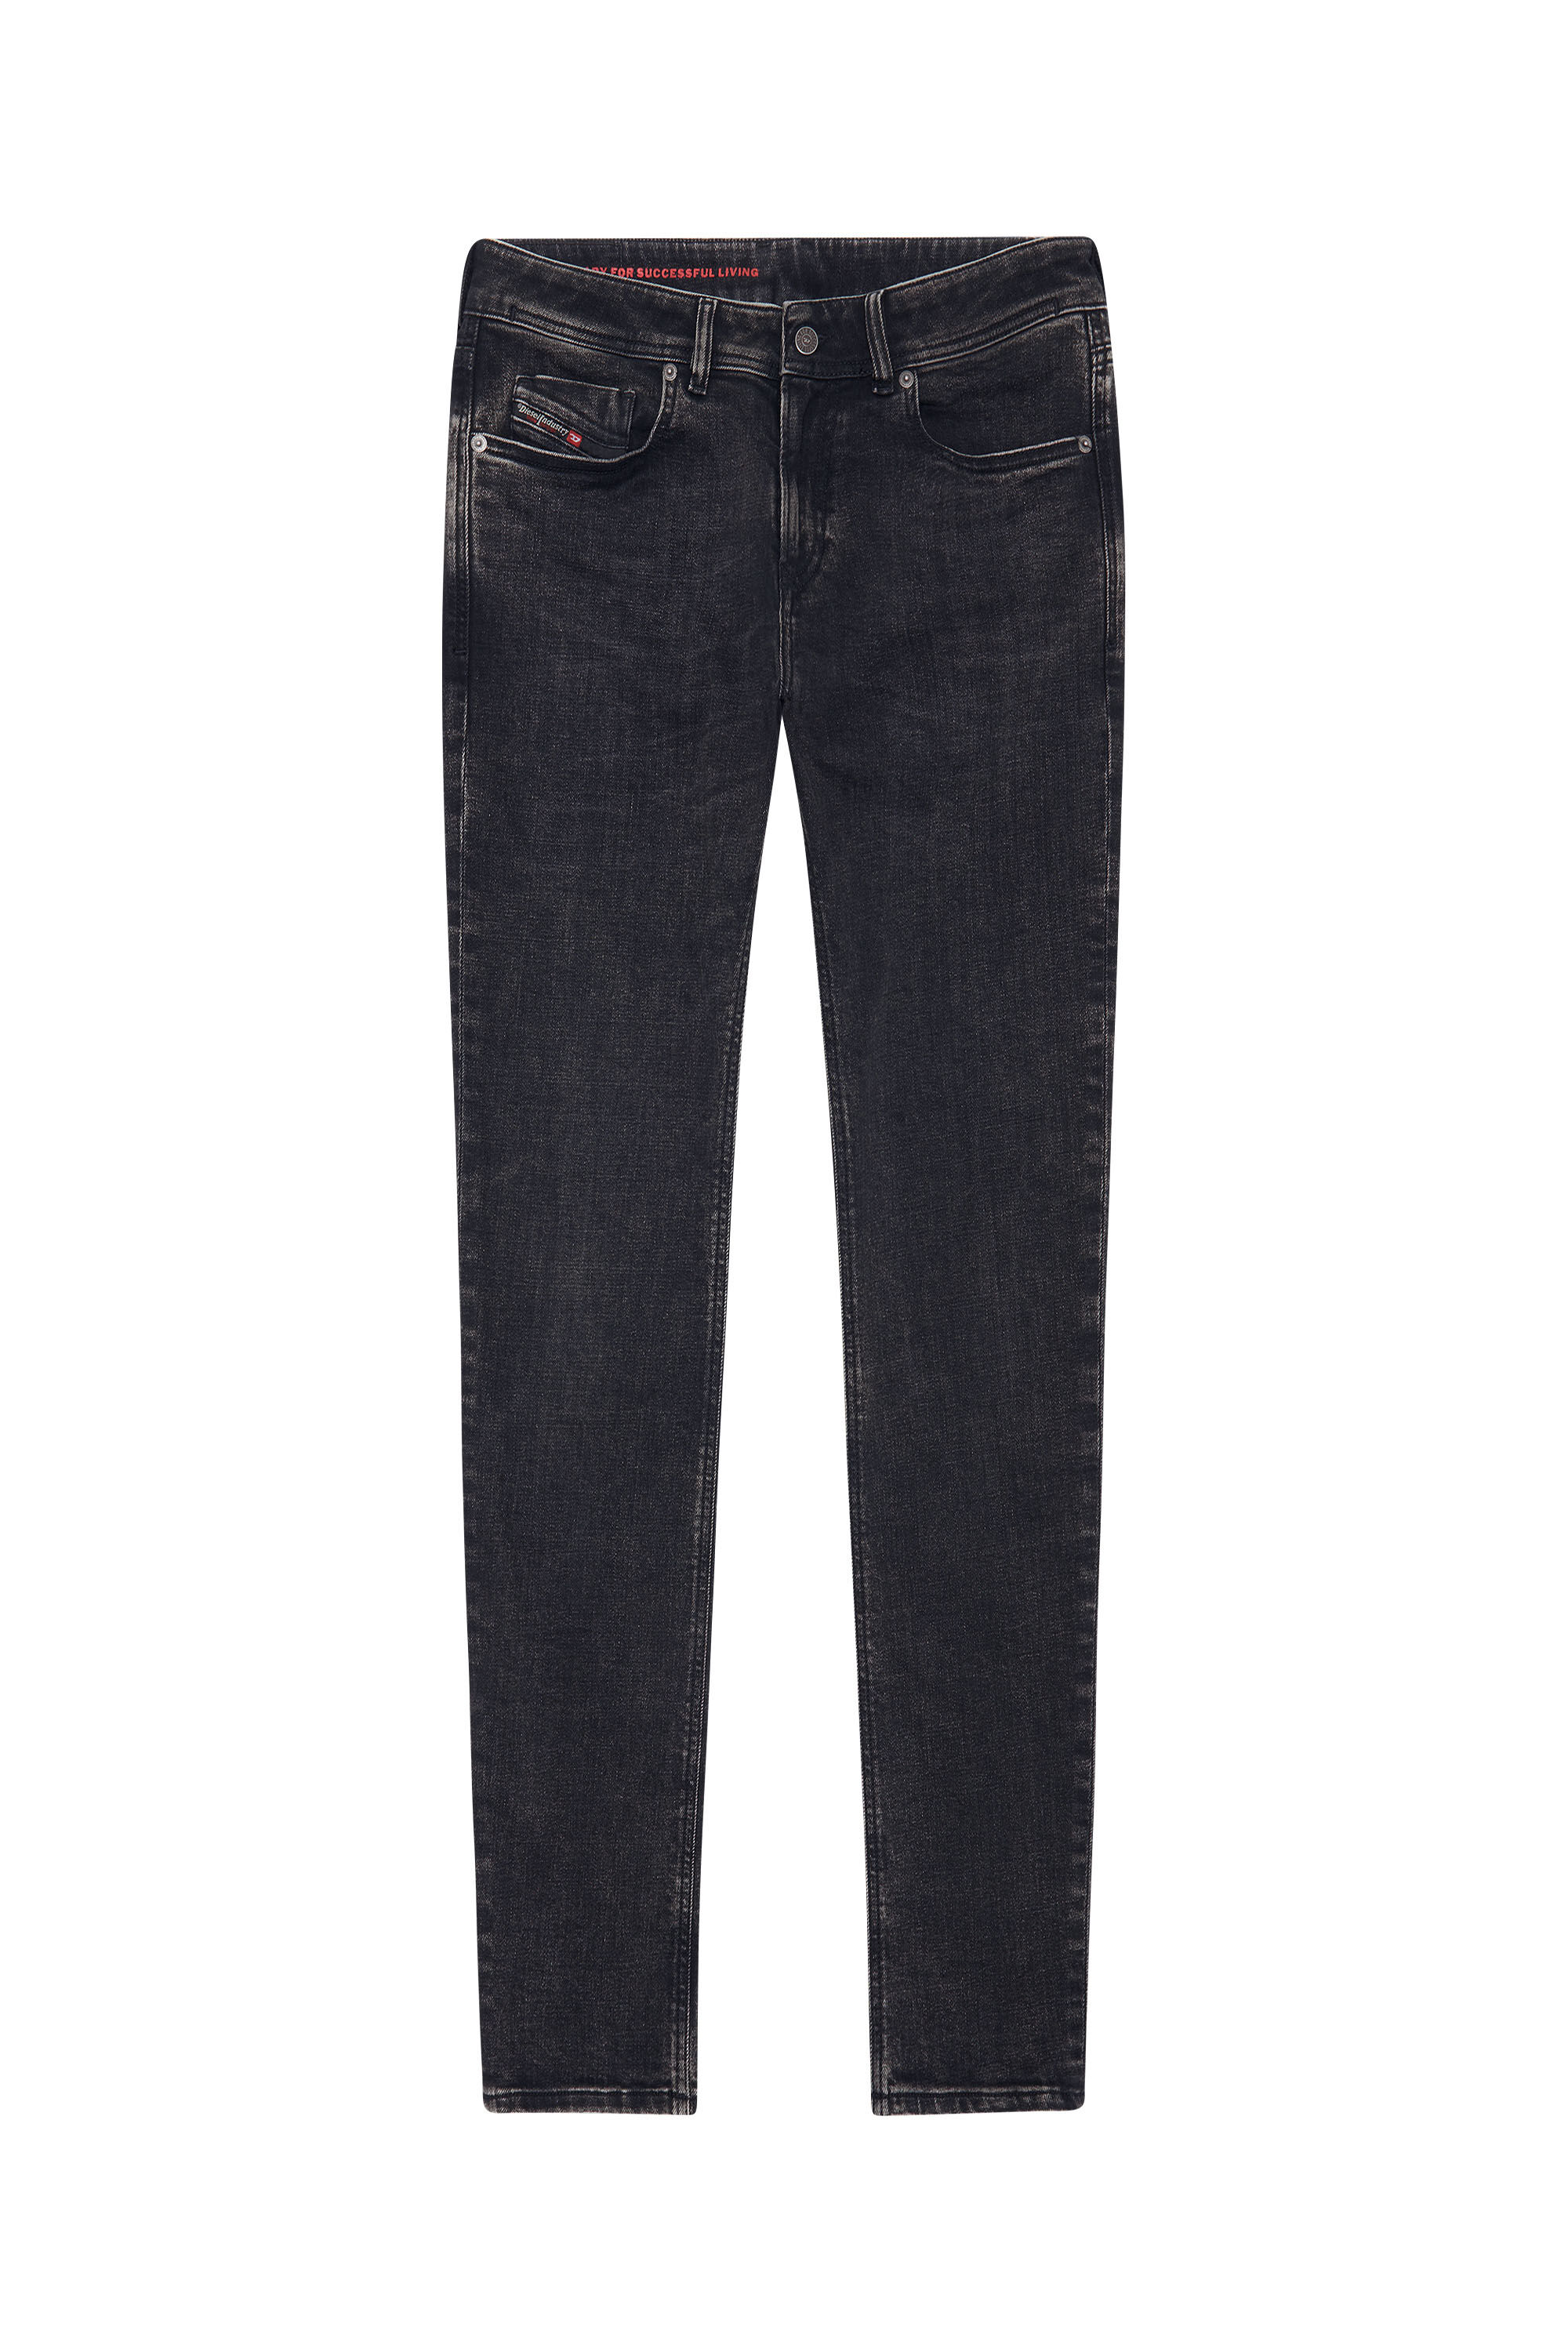 Diesel - Skinny Jeans 1979 Sleenker 09C23, Black/Dark grey - Image 2